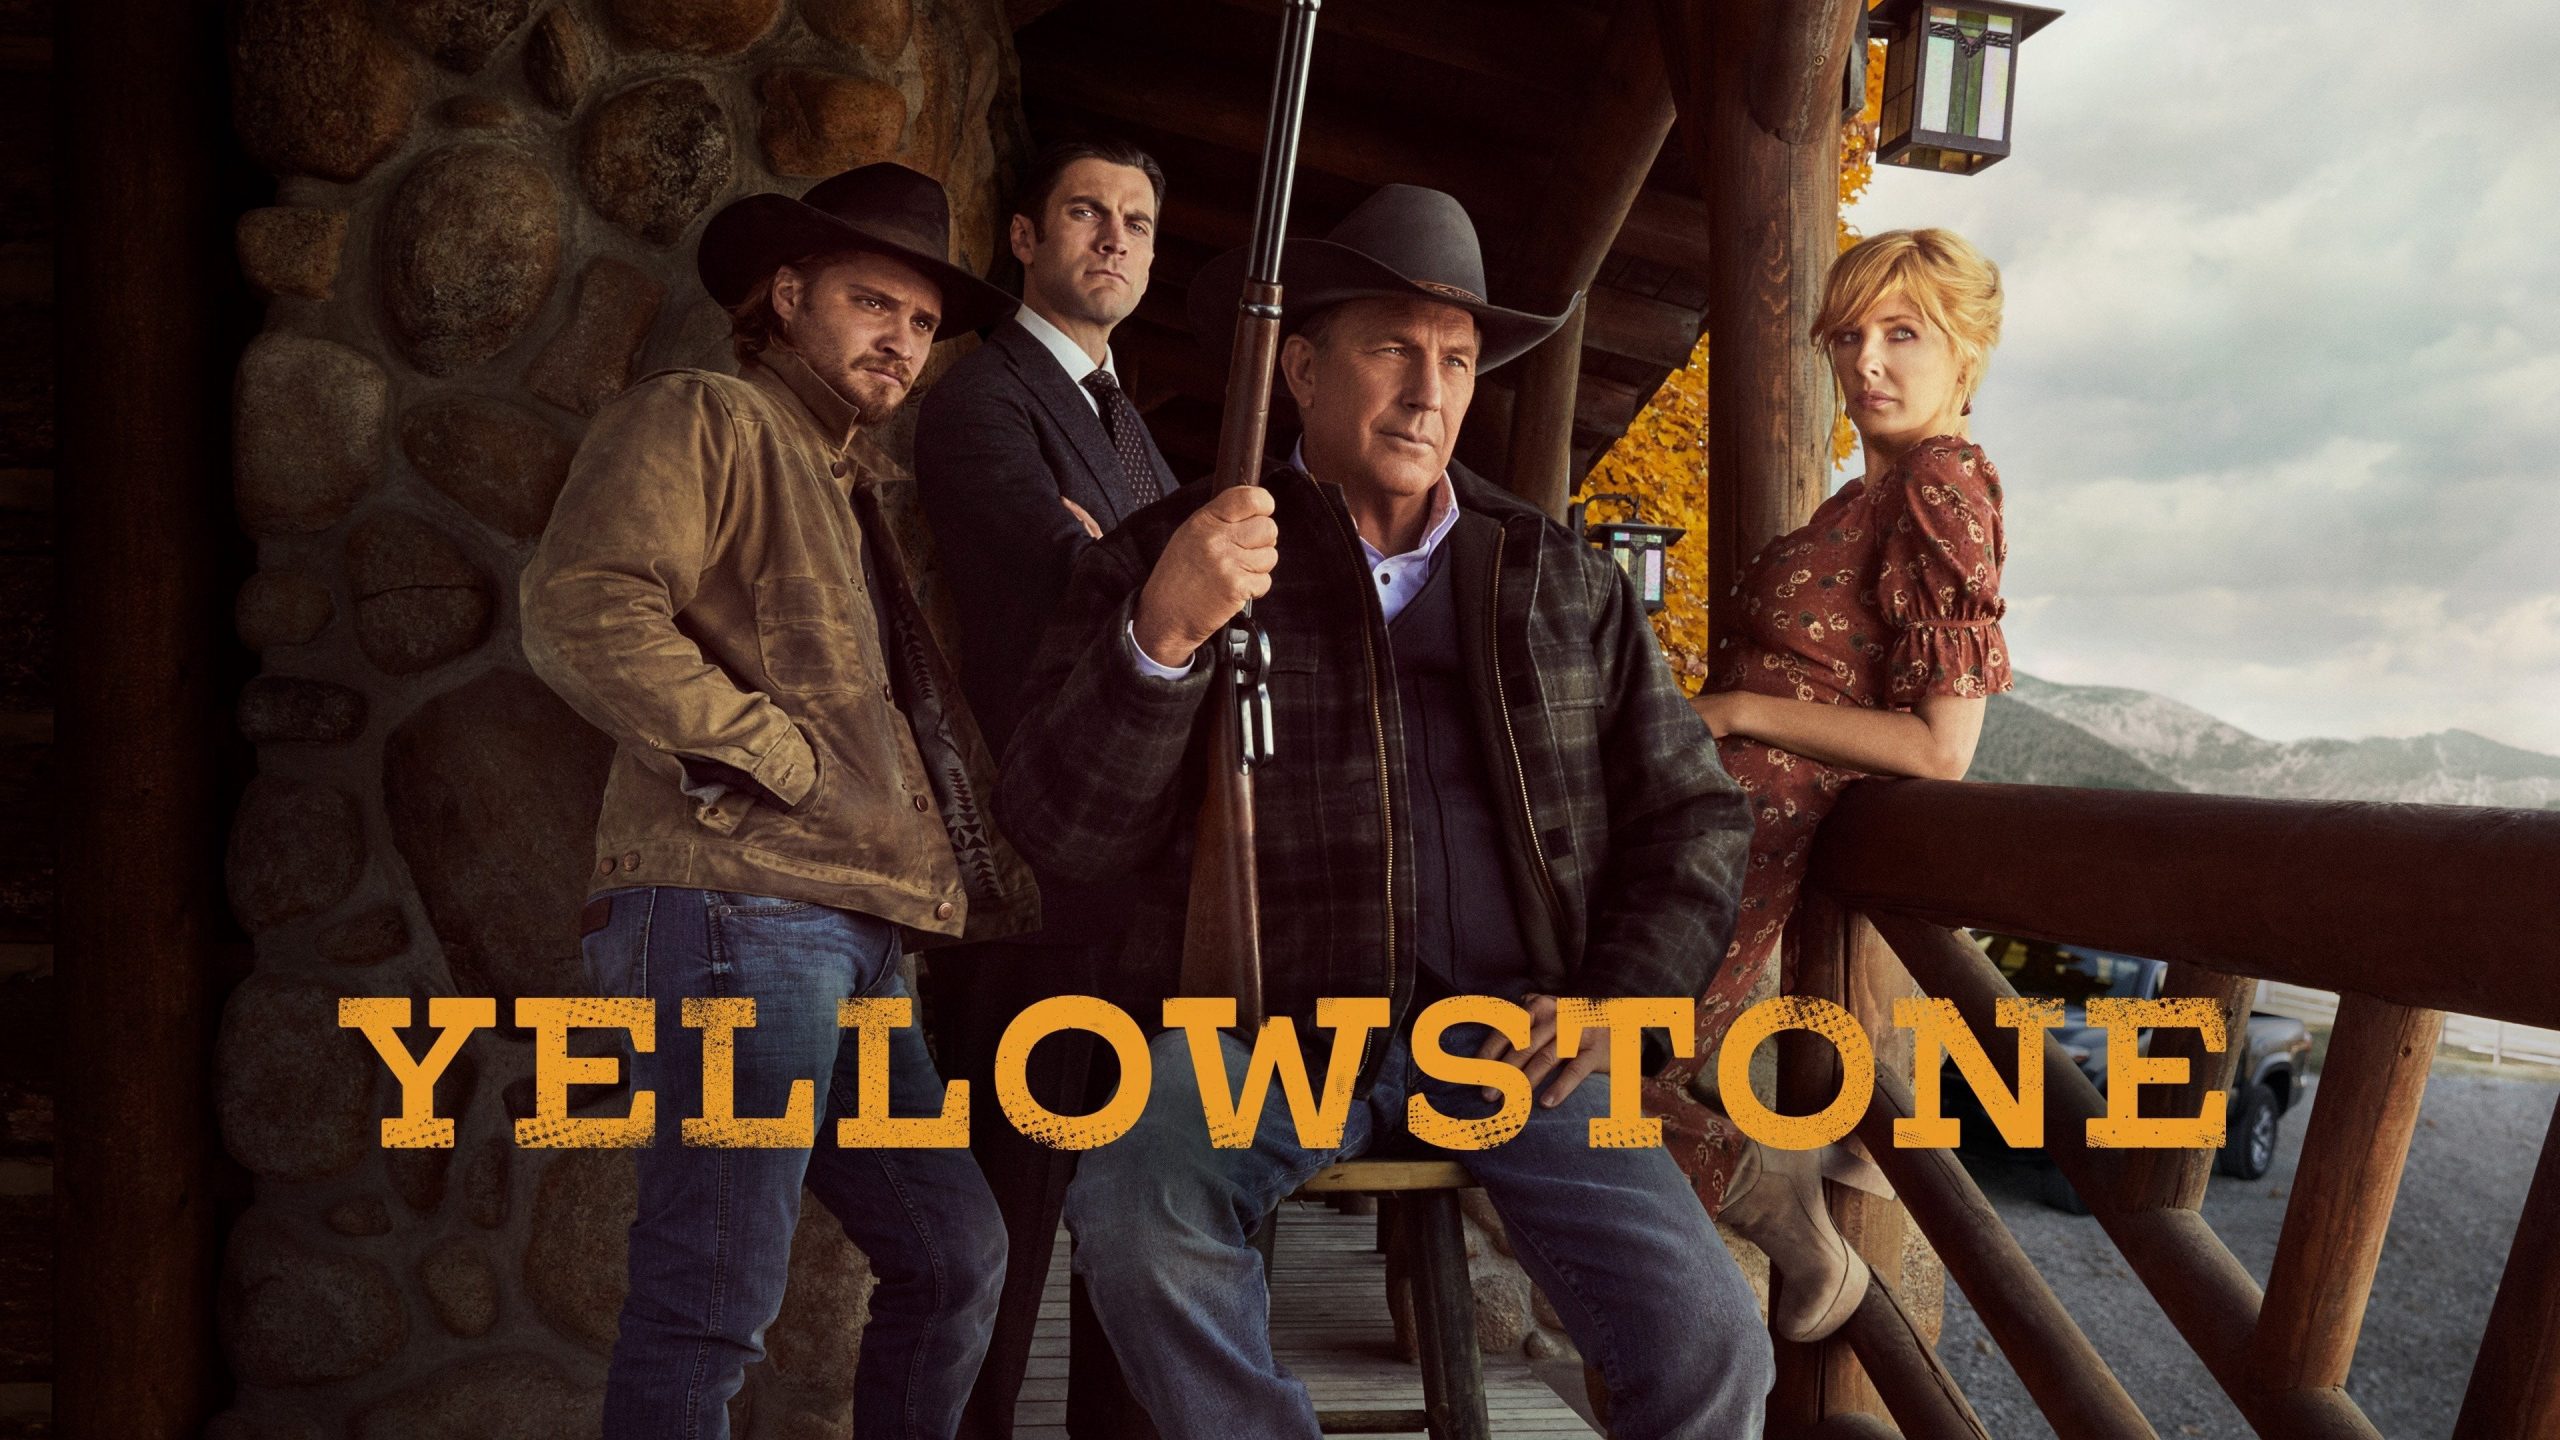 yellowstone season 4 episodes 4